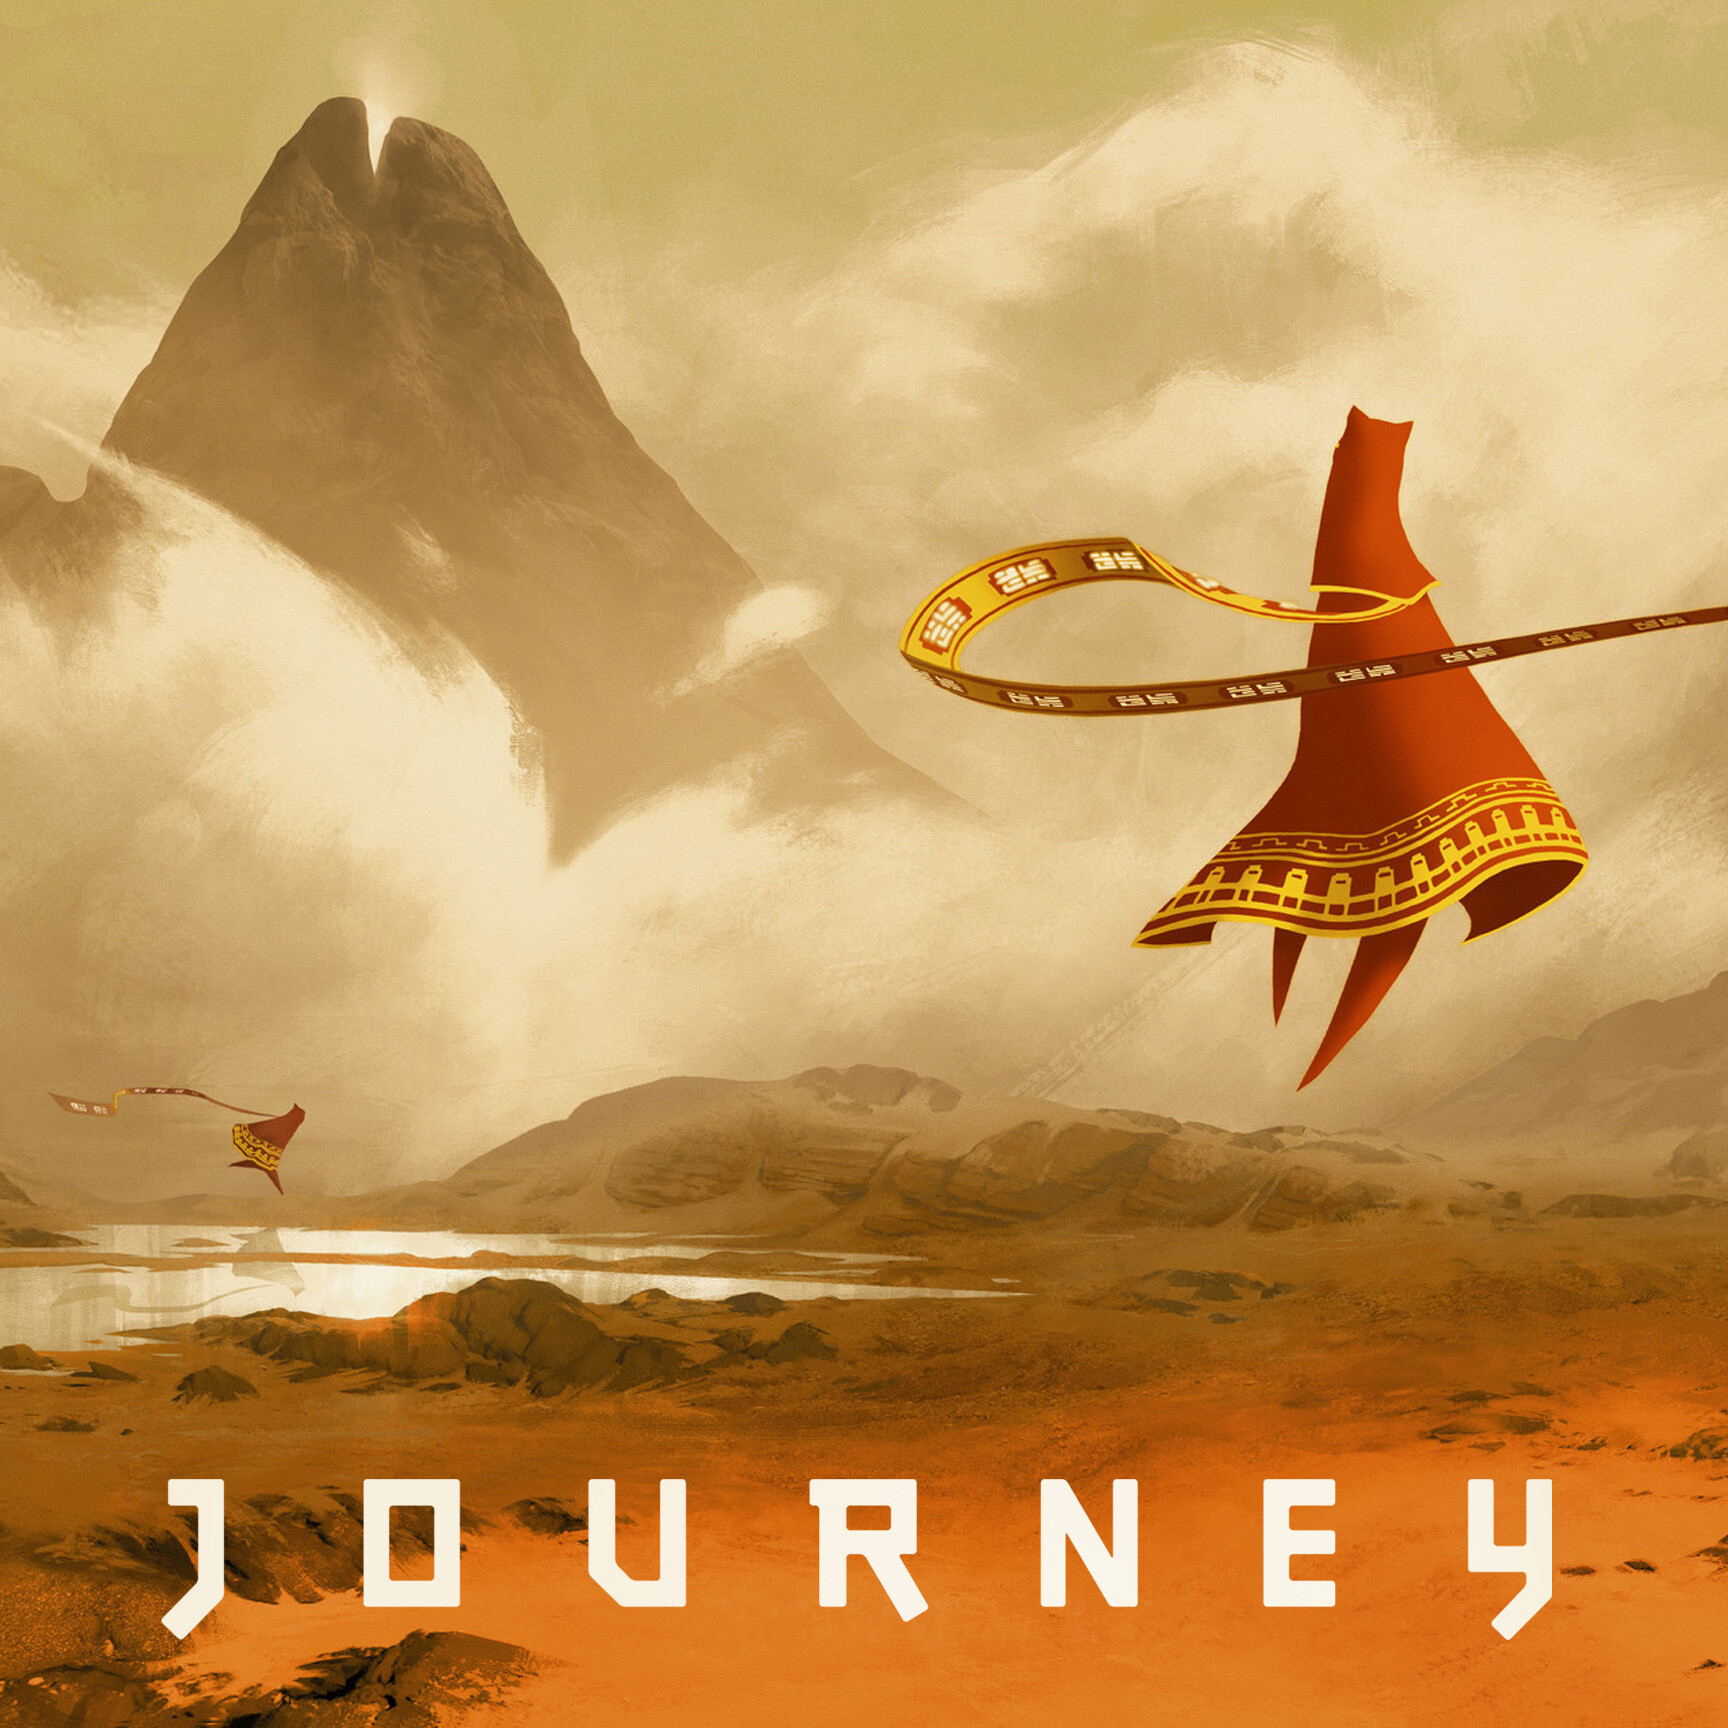 Celestyal journey. Journey (игра, 2012). Journey thatgamecompany. Путешествие игра Journey. Джорни путешествие игра.